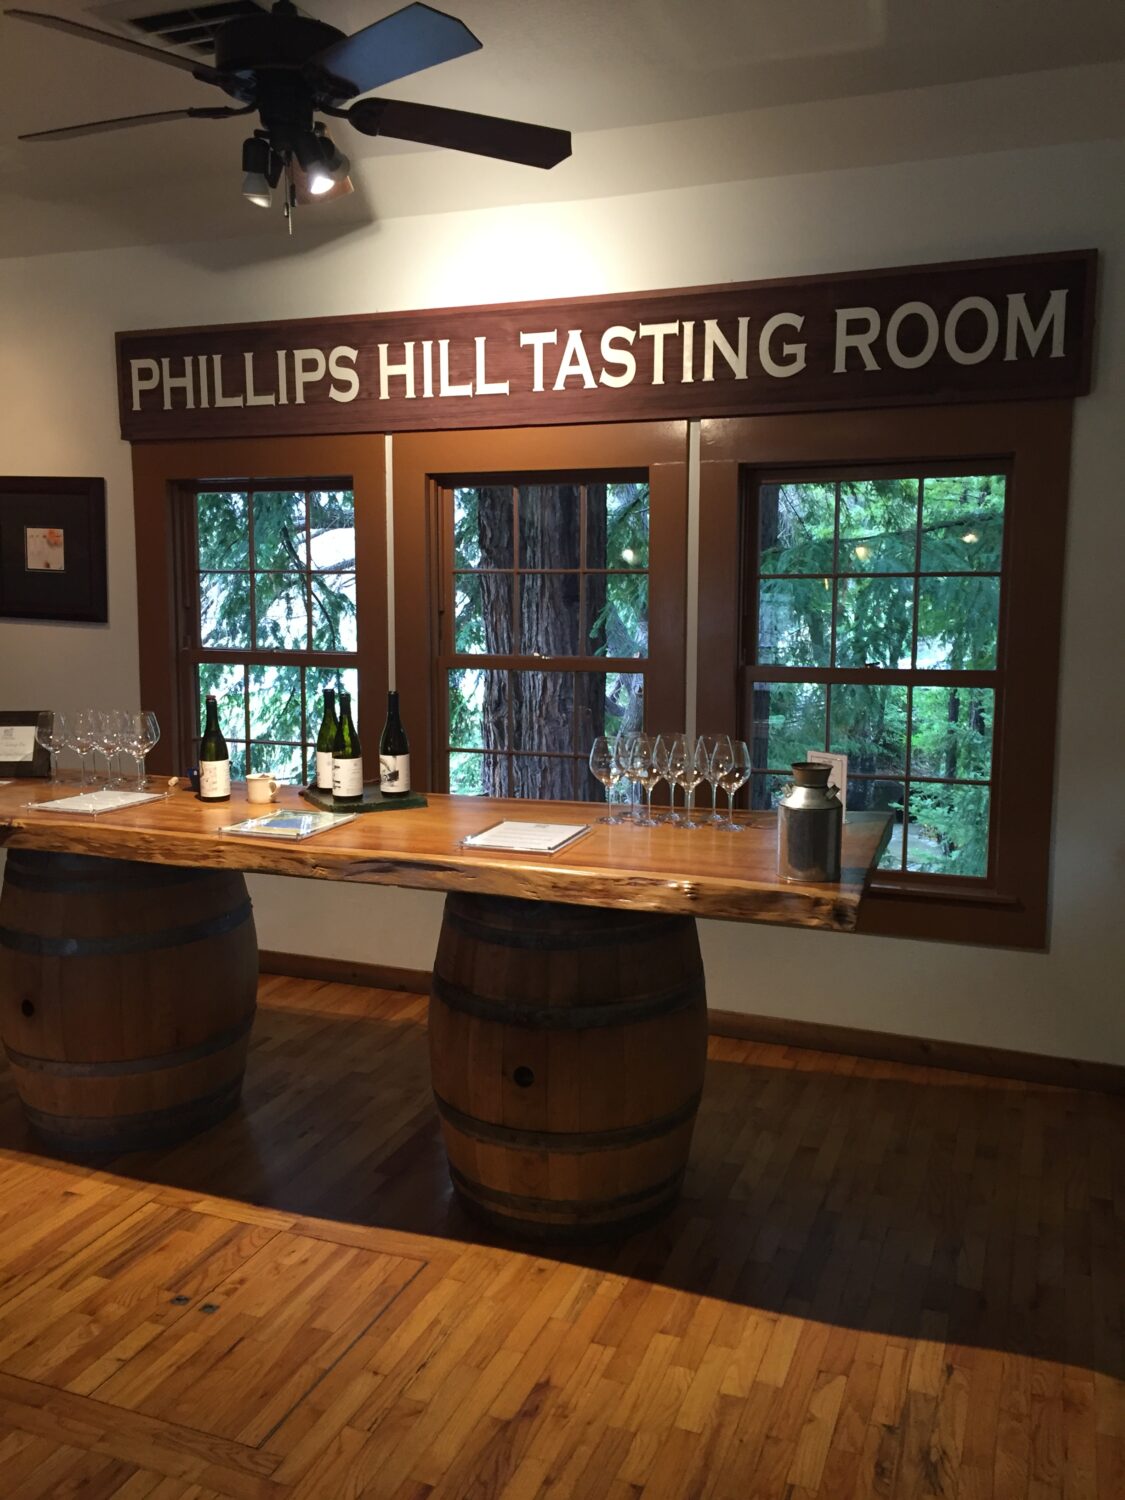 Philips Hill Tasting Room